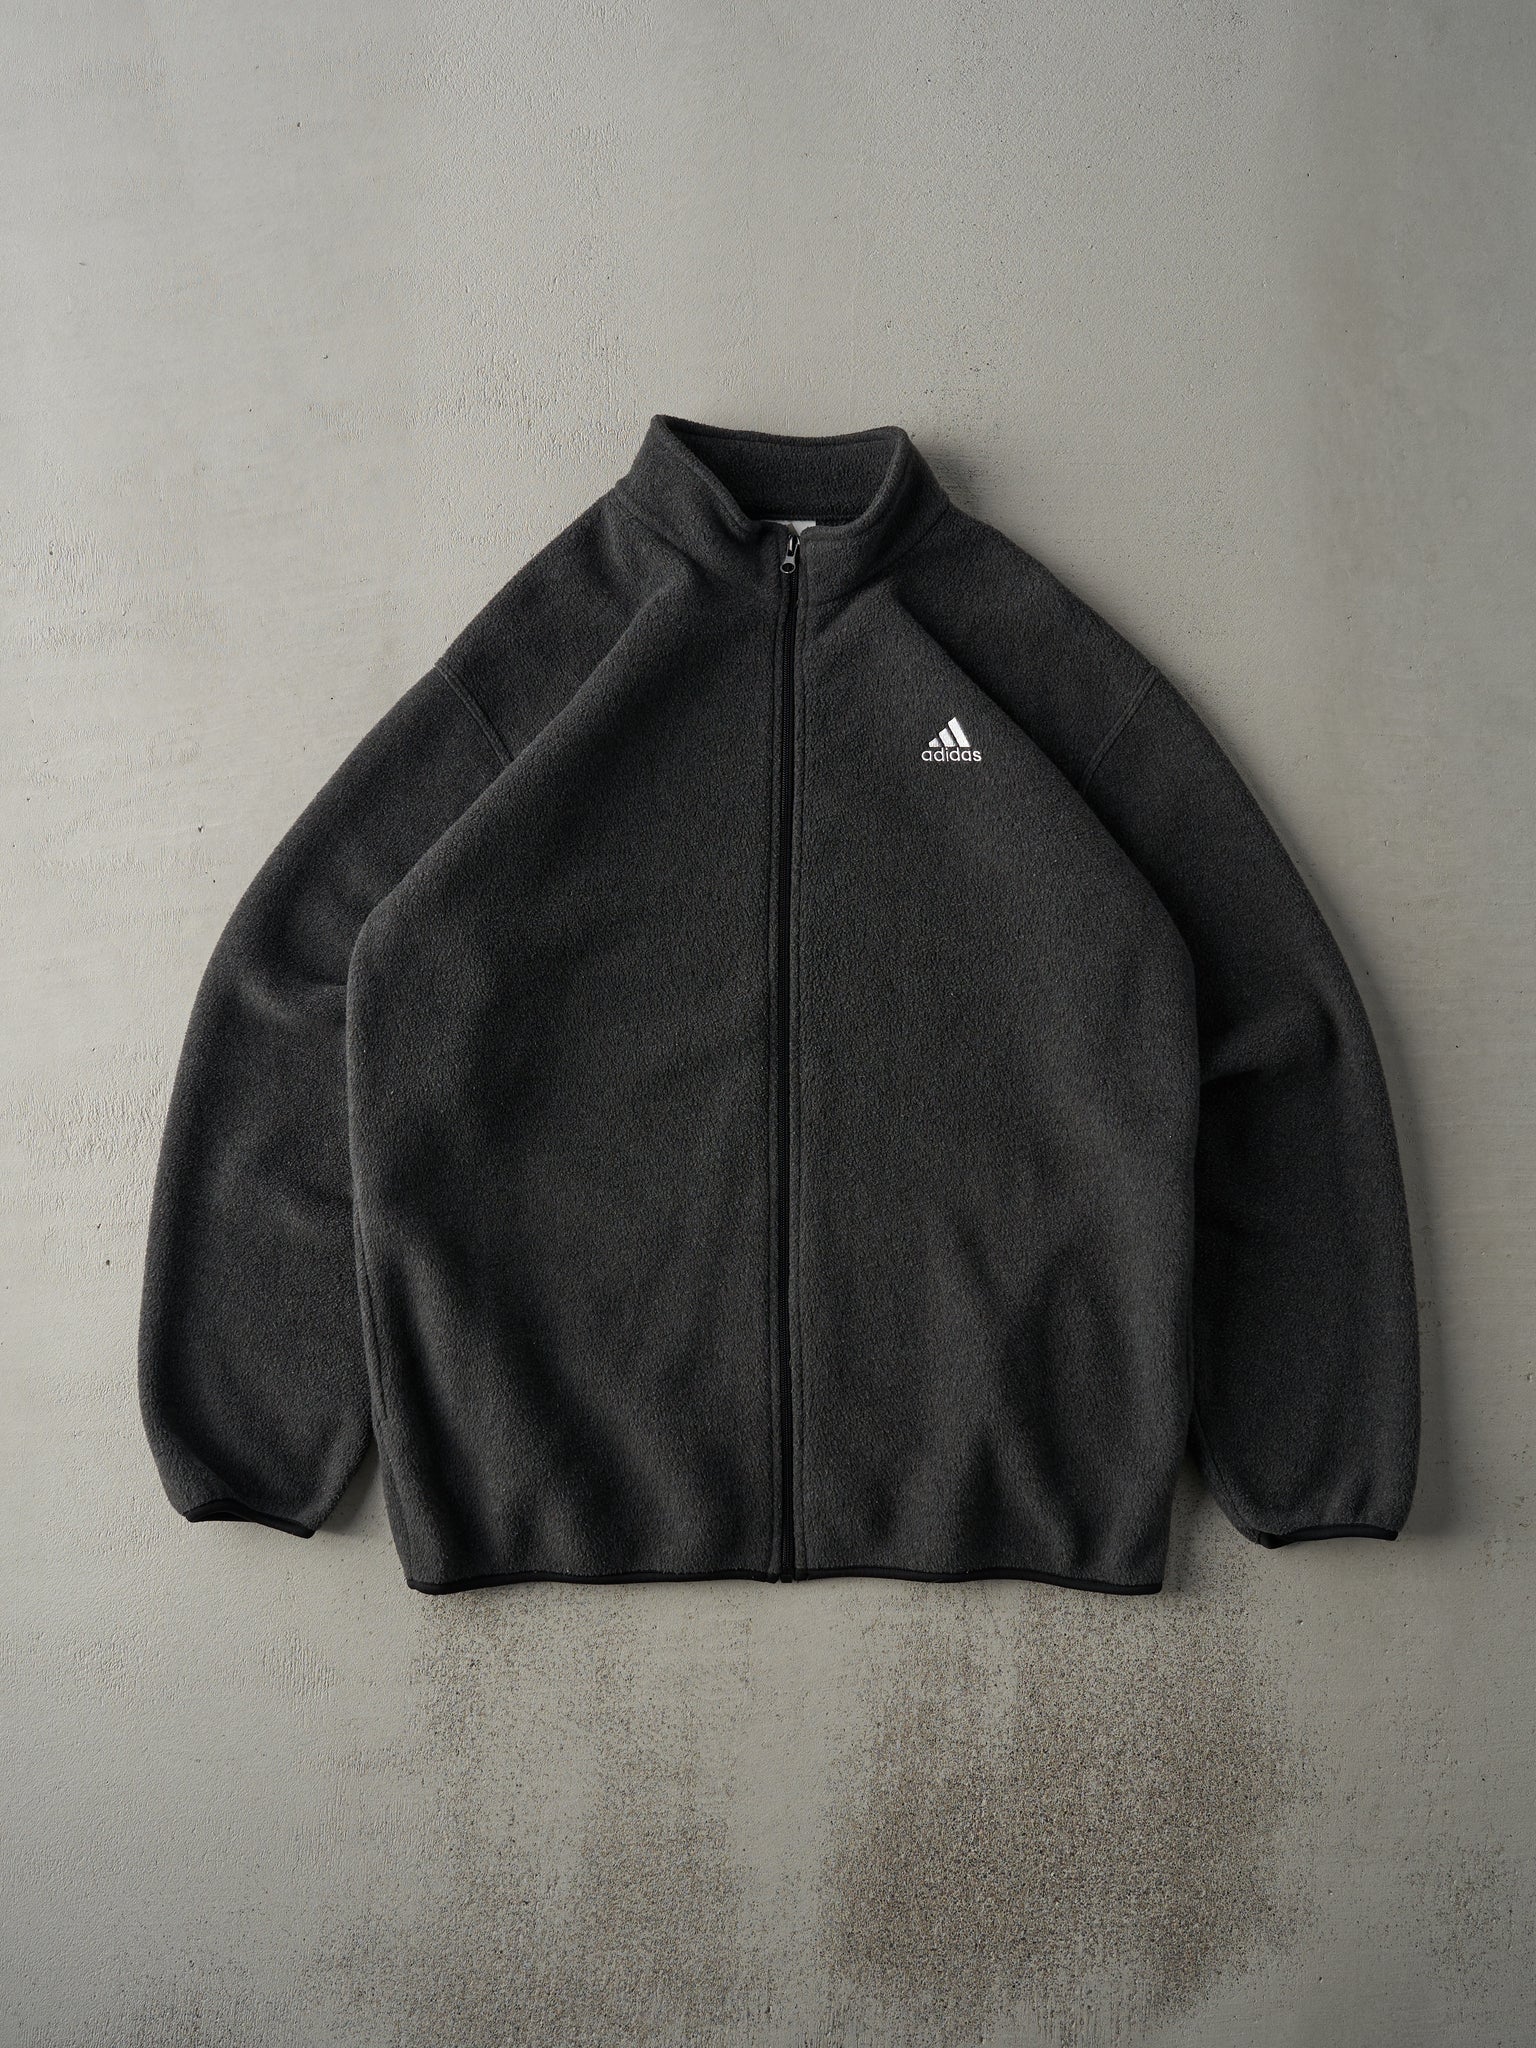 Vintage 90s Charcoal Grey Adidas Fleece Zip Up Sweater (L)